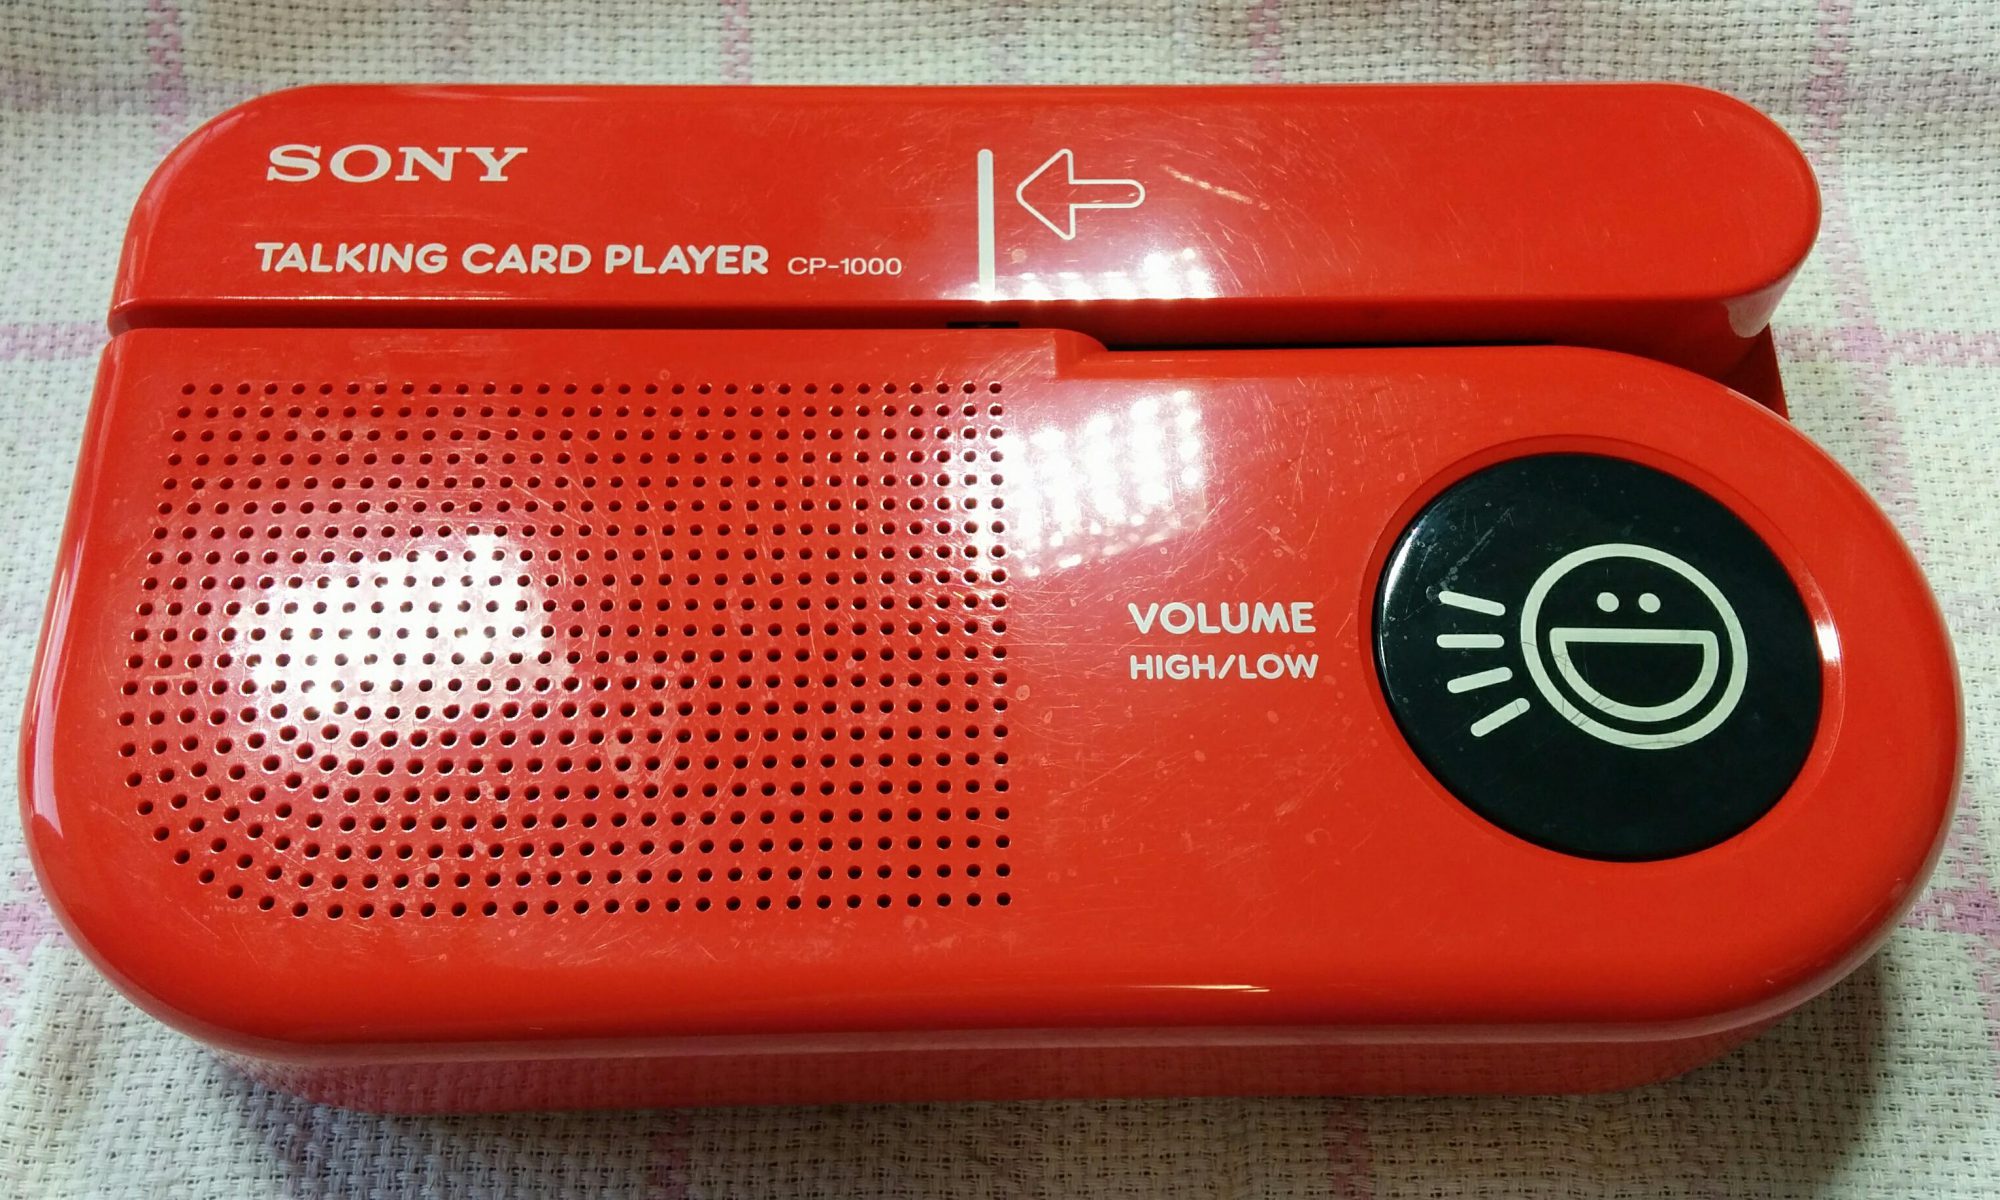 ソニートーキングカードプレーヤー CP-1000 カード磁気劣化 - 宅配おもちゃ病院 takishita.jp